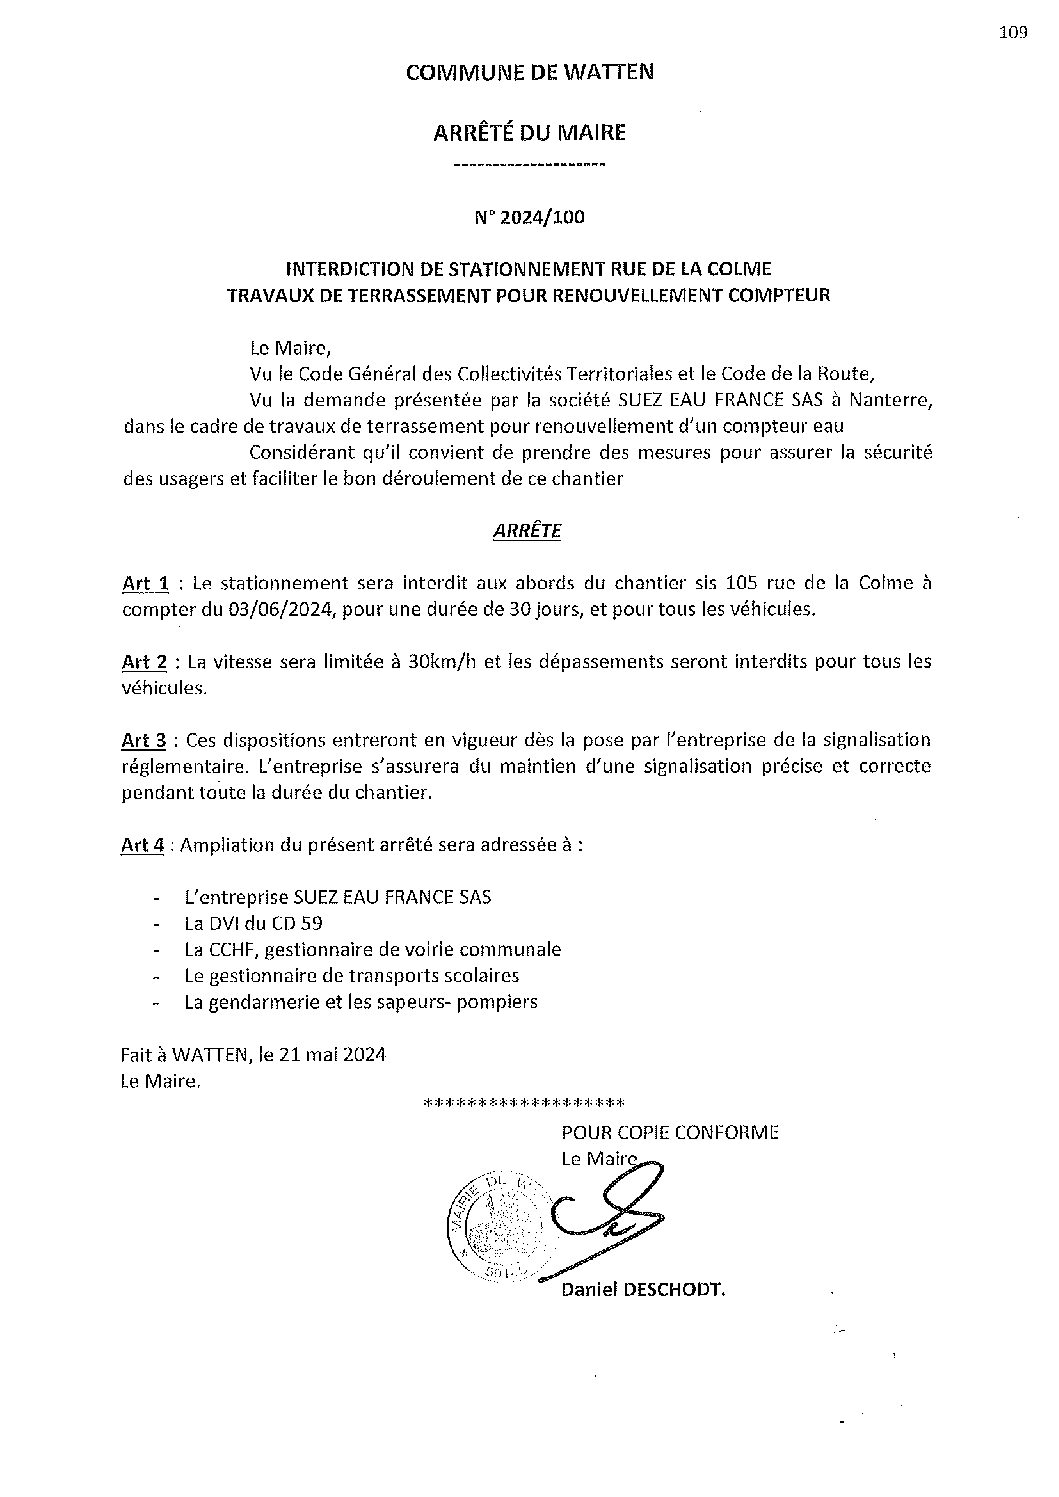 2024-100 arrêté du 21-05-2024 interdiction stationnement rue de la Colme renouvellement compteur SUEZ